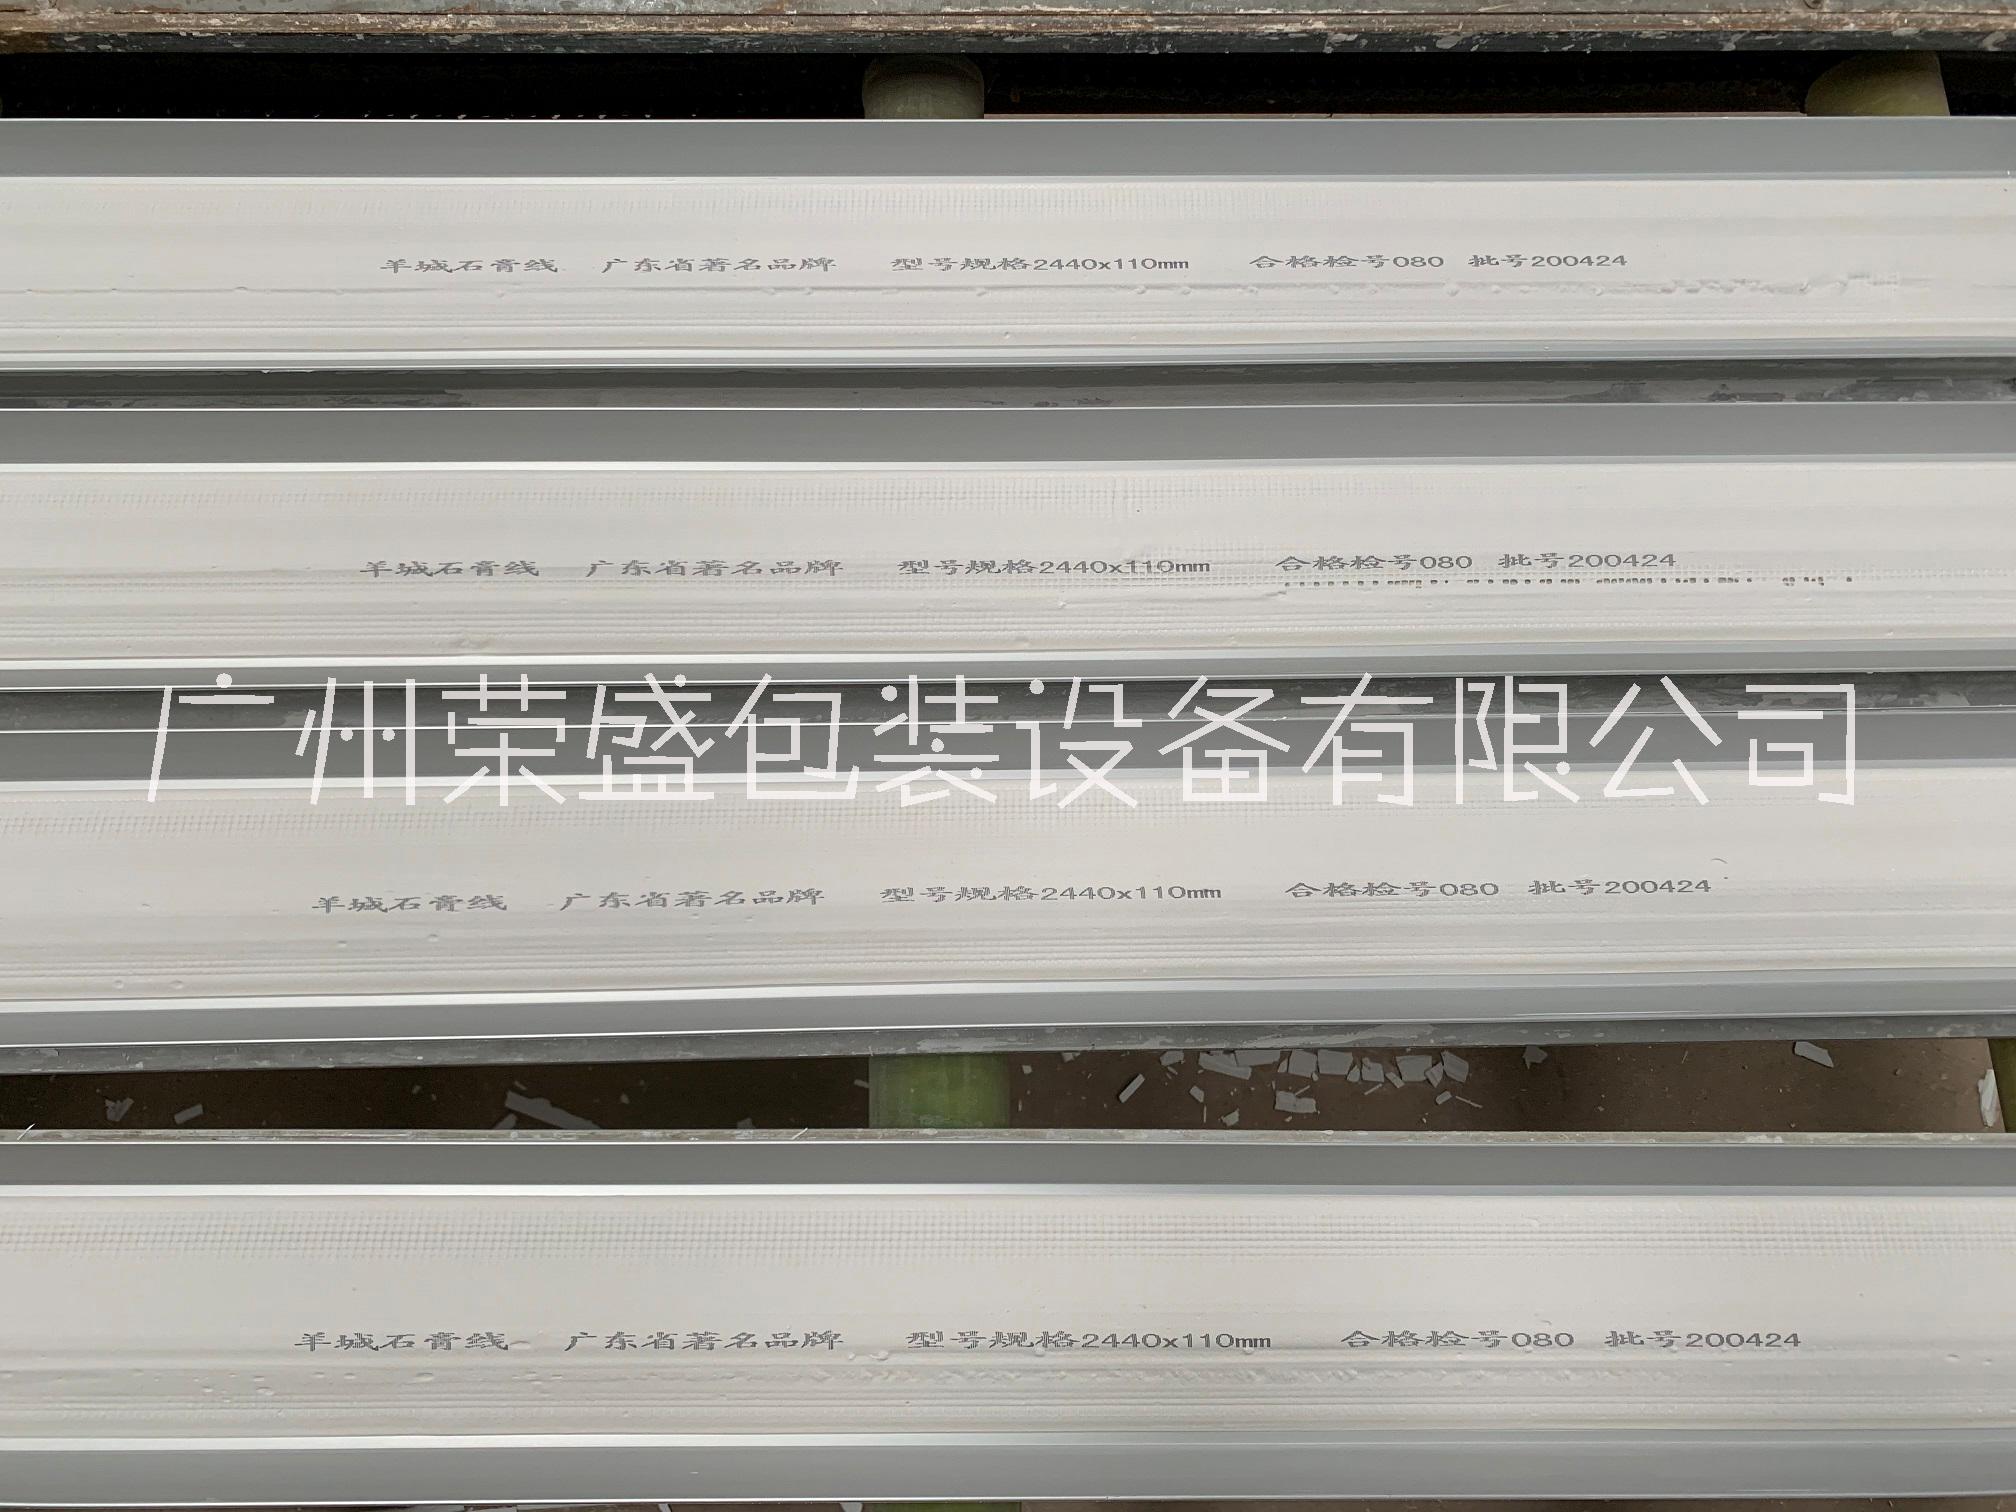 广州市石膏线喷码机厂家供应石膏线喷码机 石膏厂喷码机 石膏板喷码机 阿菲斯喷码机